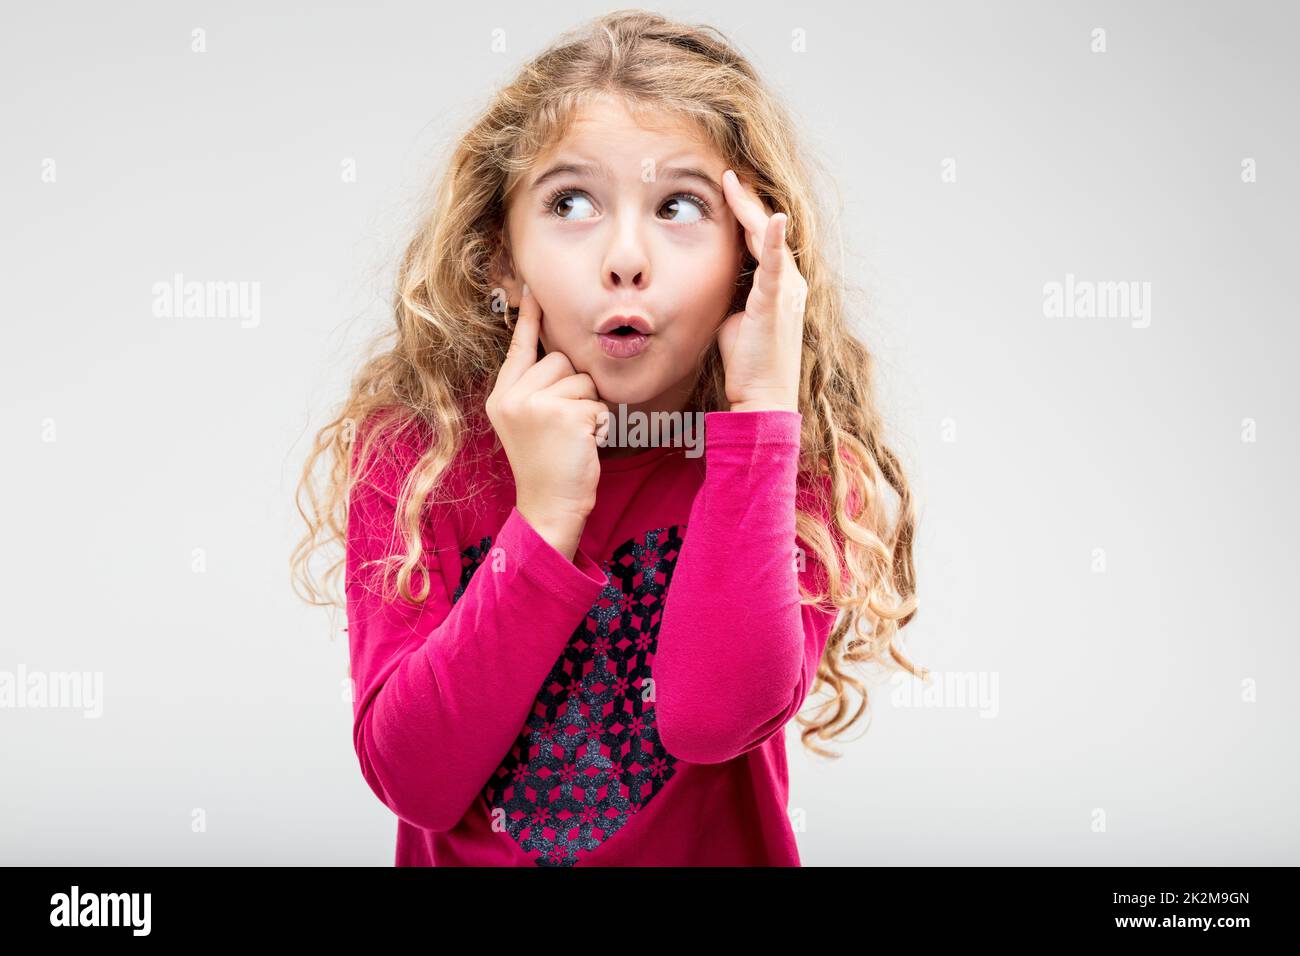 Divertente bambina allegra con un'espressione stuzzicante Foto Stock